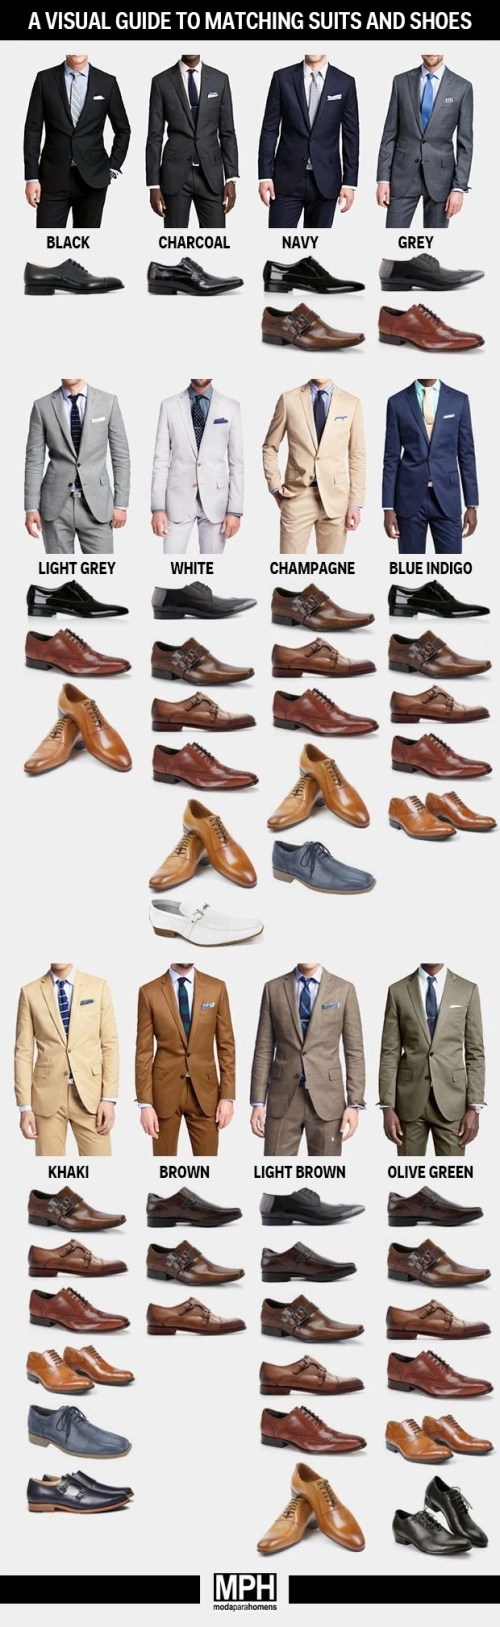 Cách chọn màu giày nam phù hợp với suit - 1